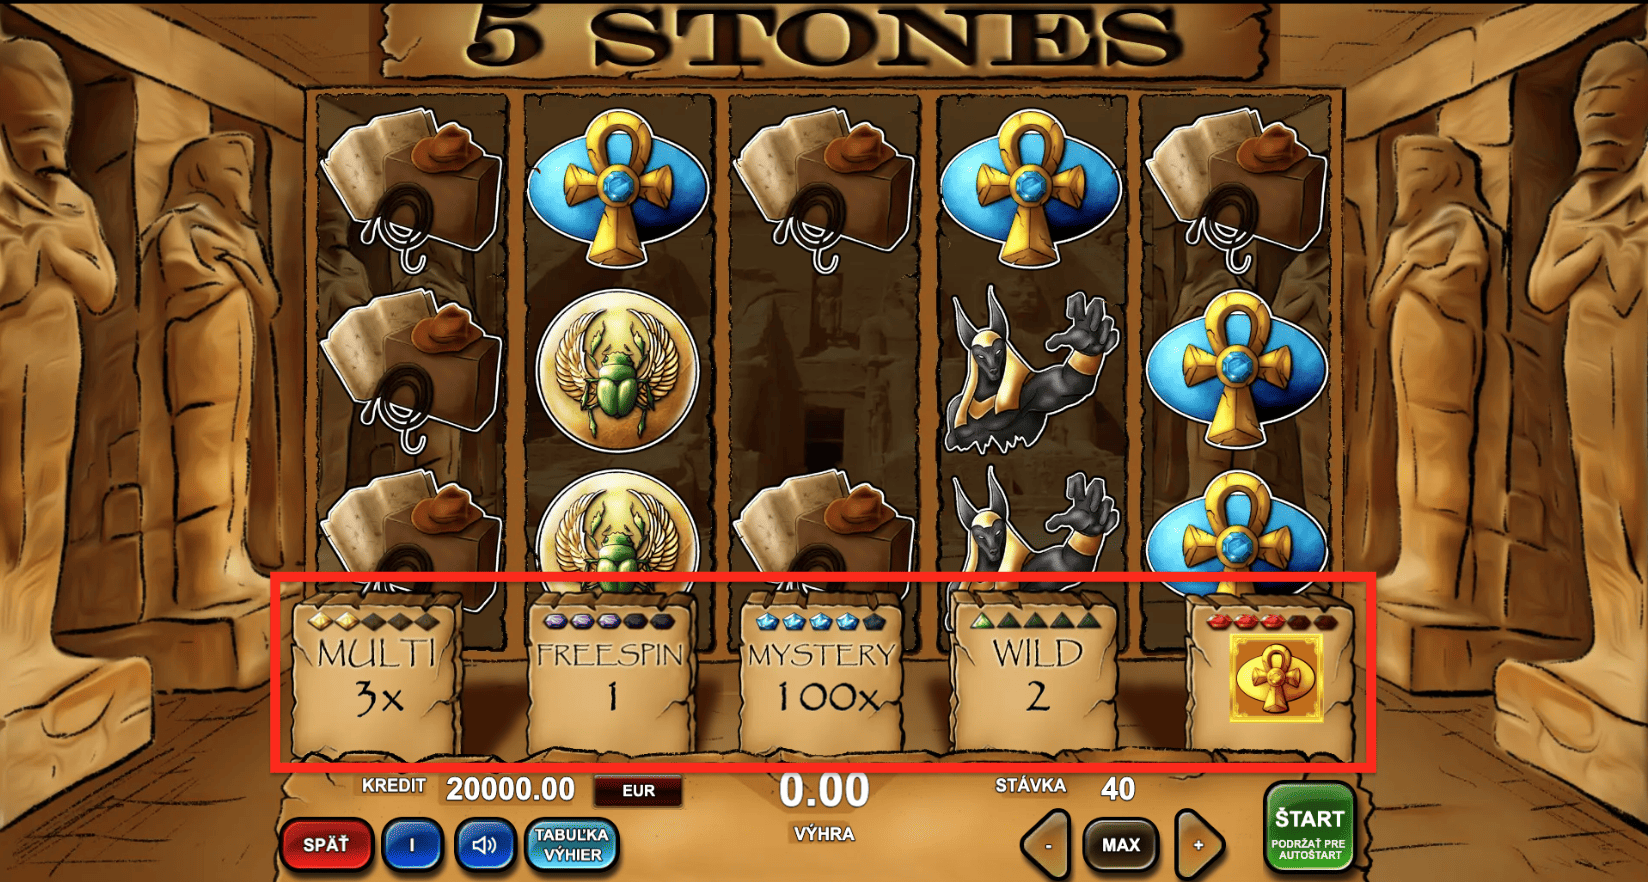 Online automat 5 Stones valce - päť bonusov